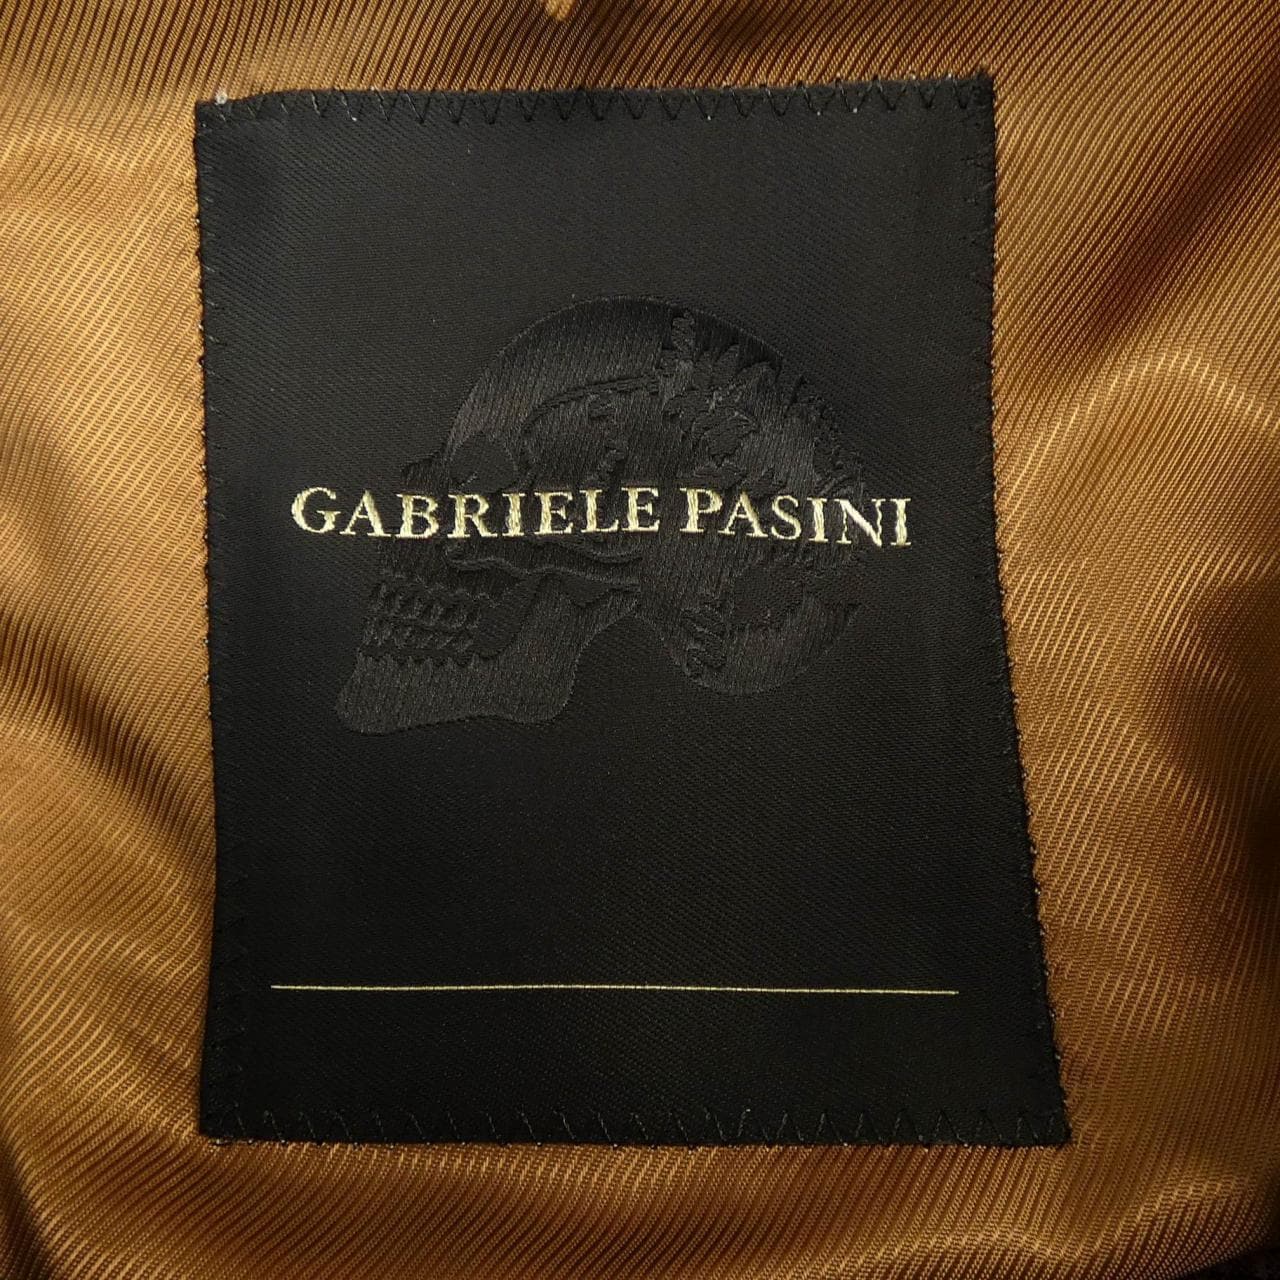 GABRIELE PASINI jacket